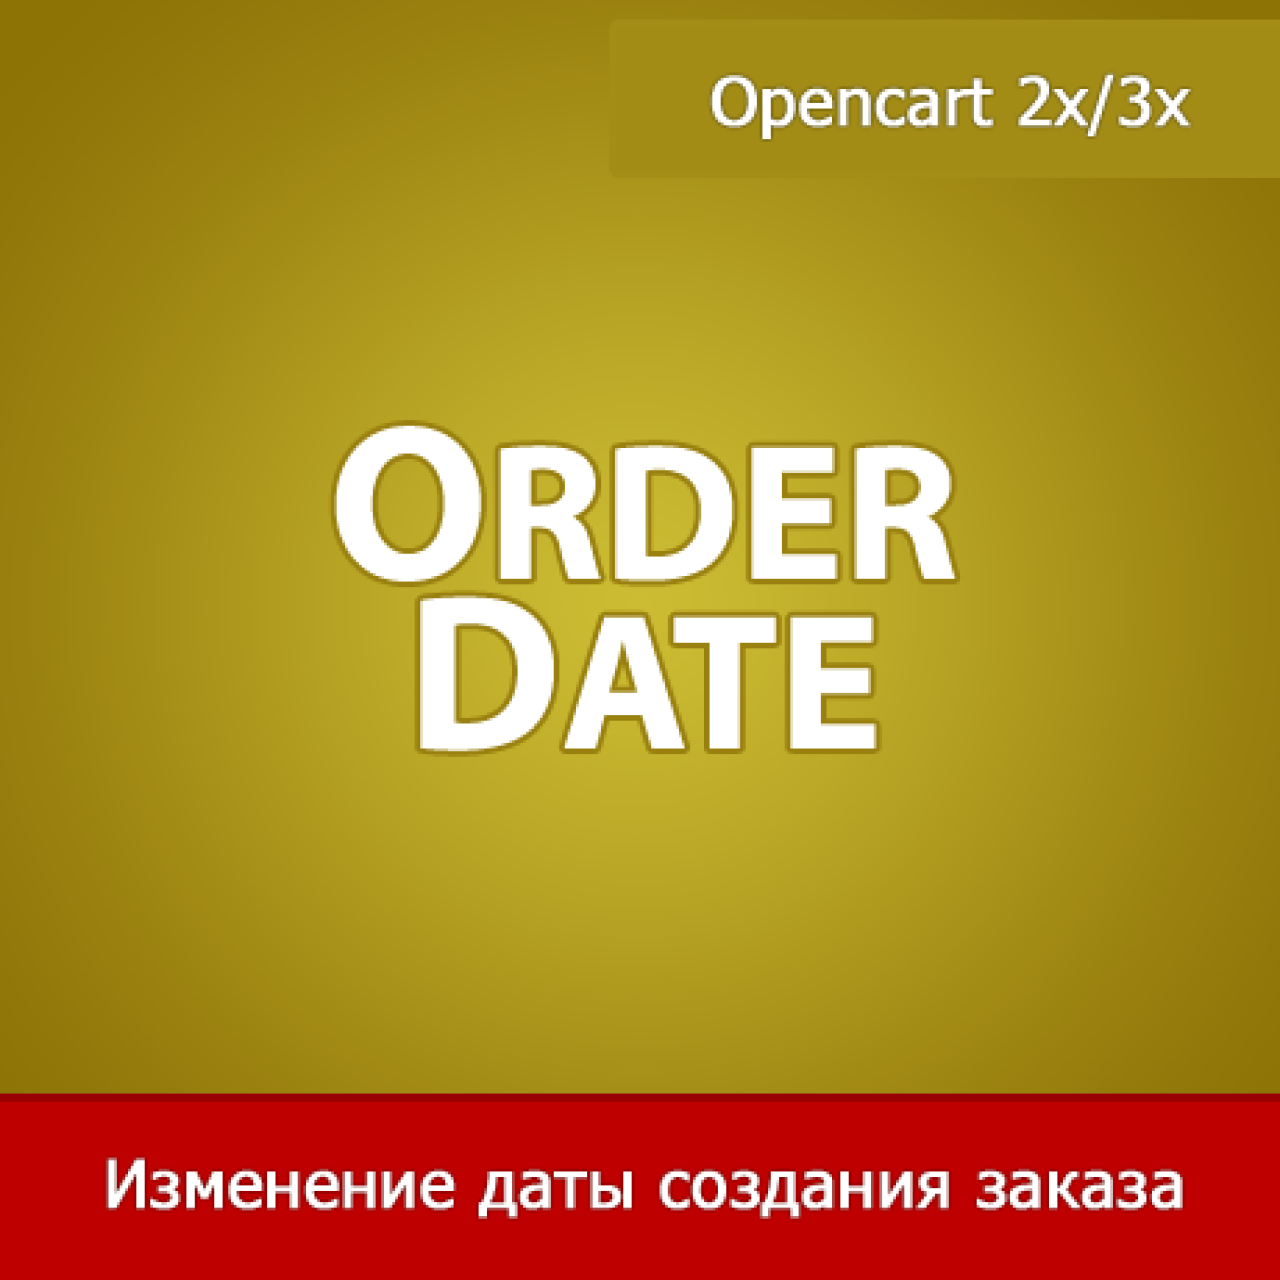 OrderDate - изменение даты создания заказа из категории Админка для CMS OpenCart (ОпенКарт)